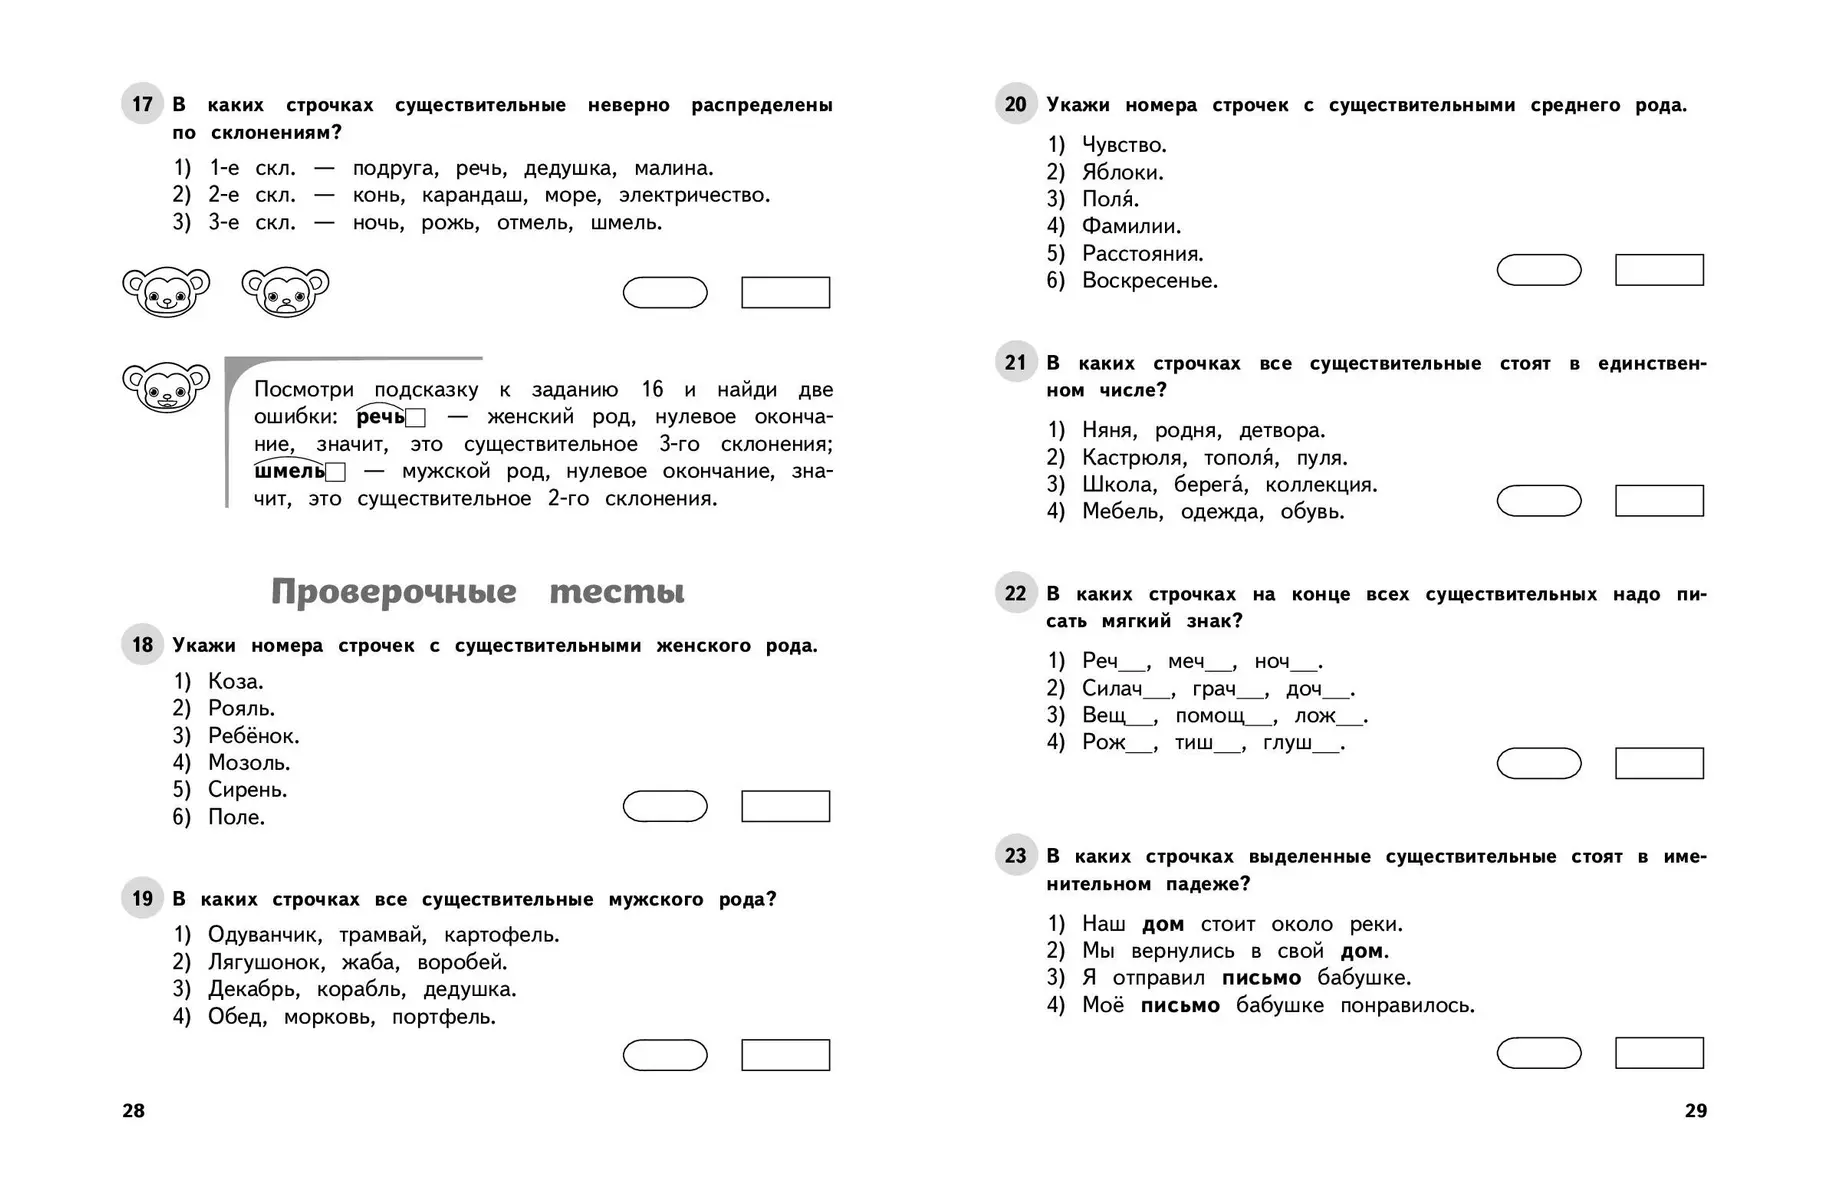 Русский язык. 3 класс. Обучающие и контрольные тесты